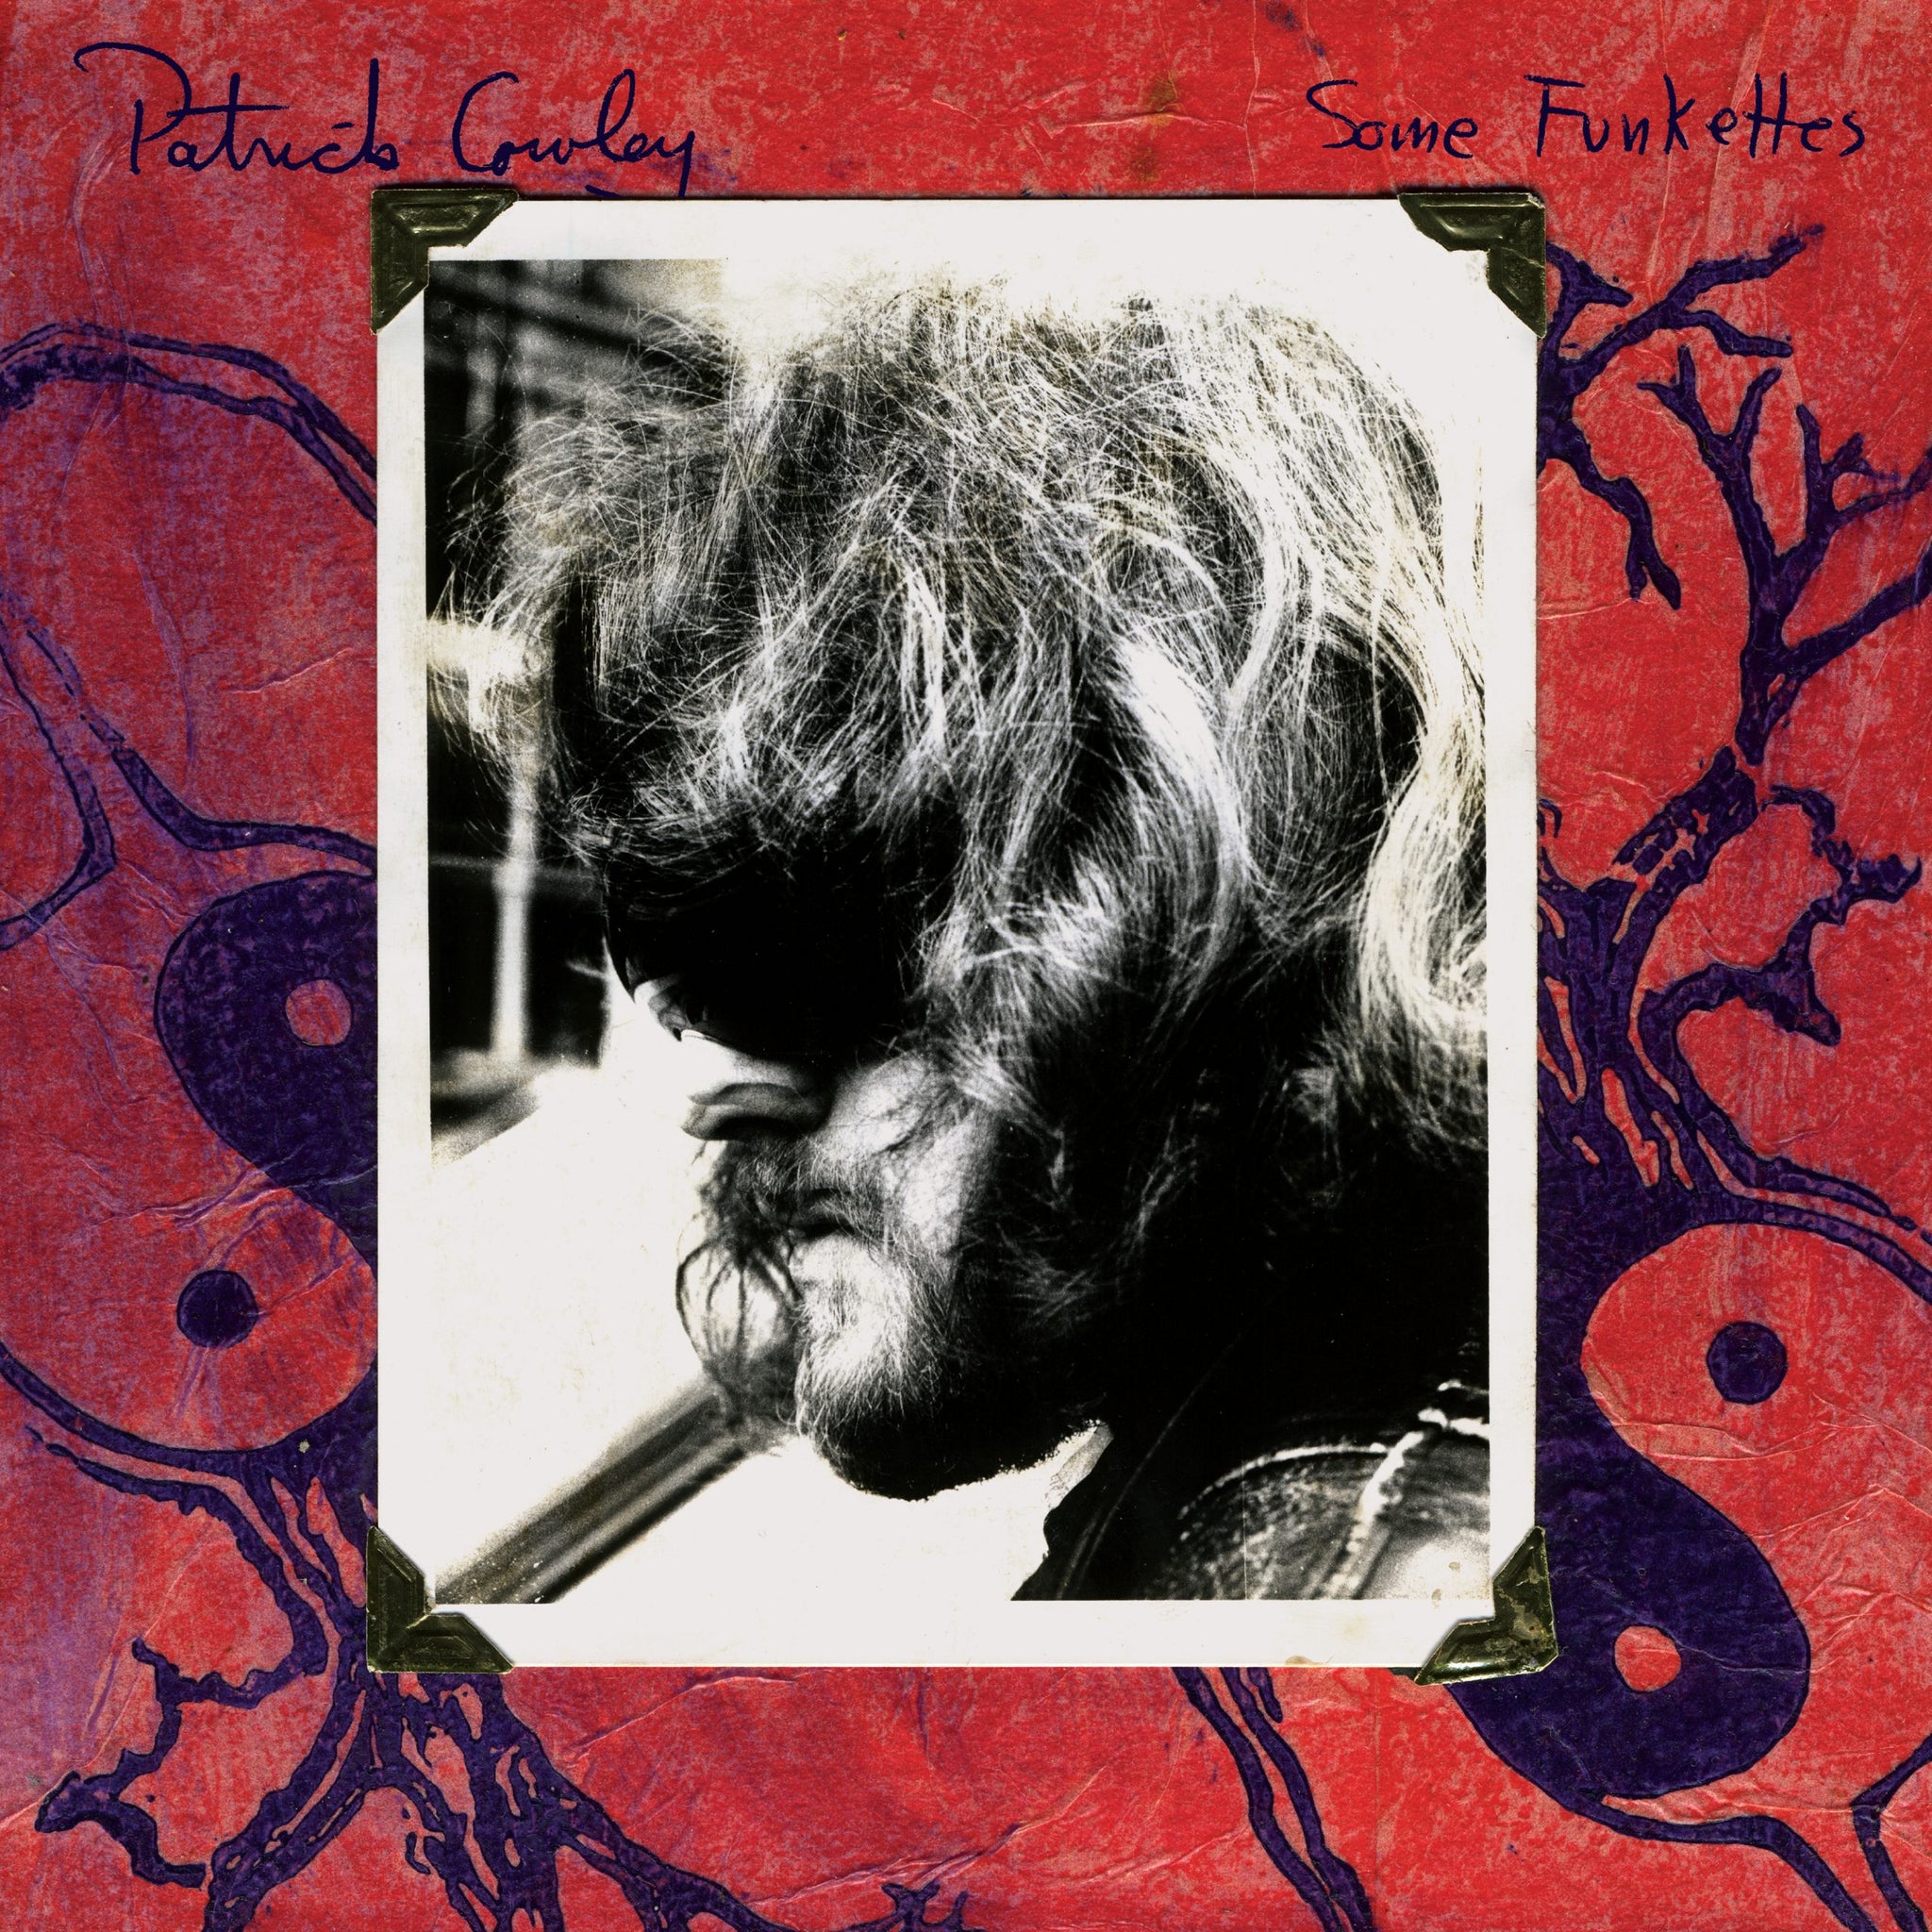 PATRICK COWLEY - SOME FUNKETTES Vinyl LP